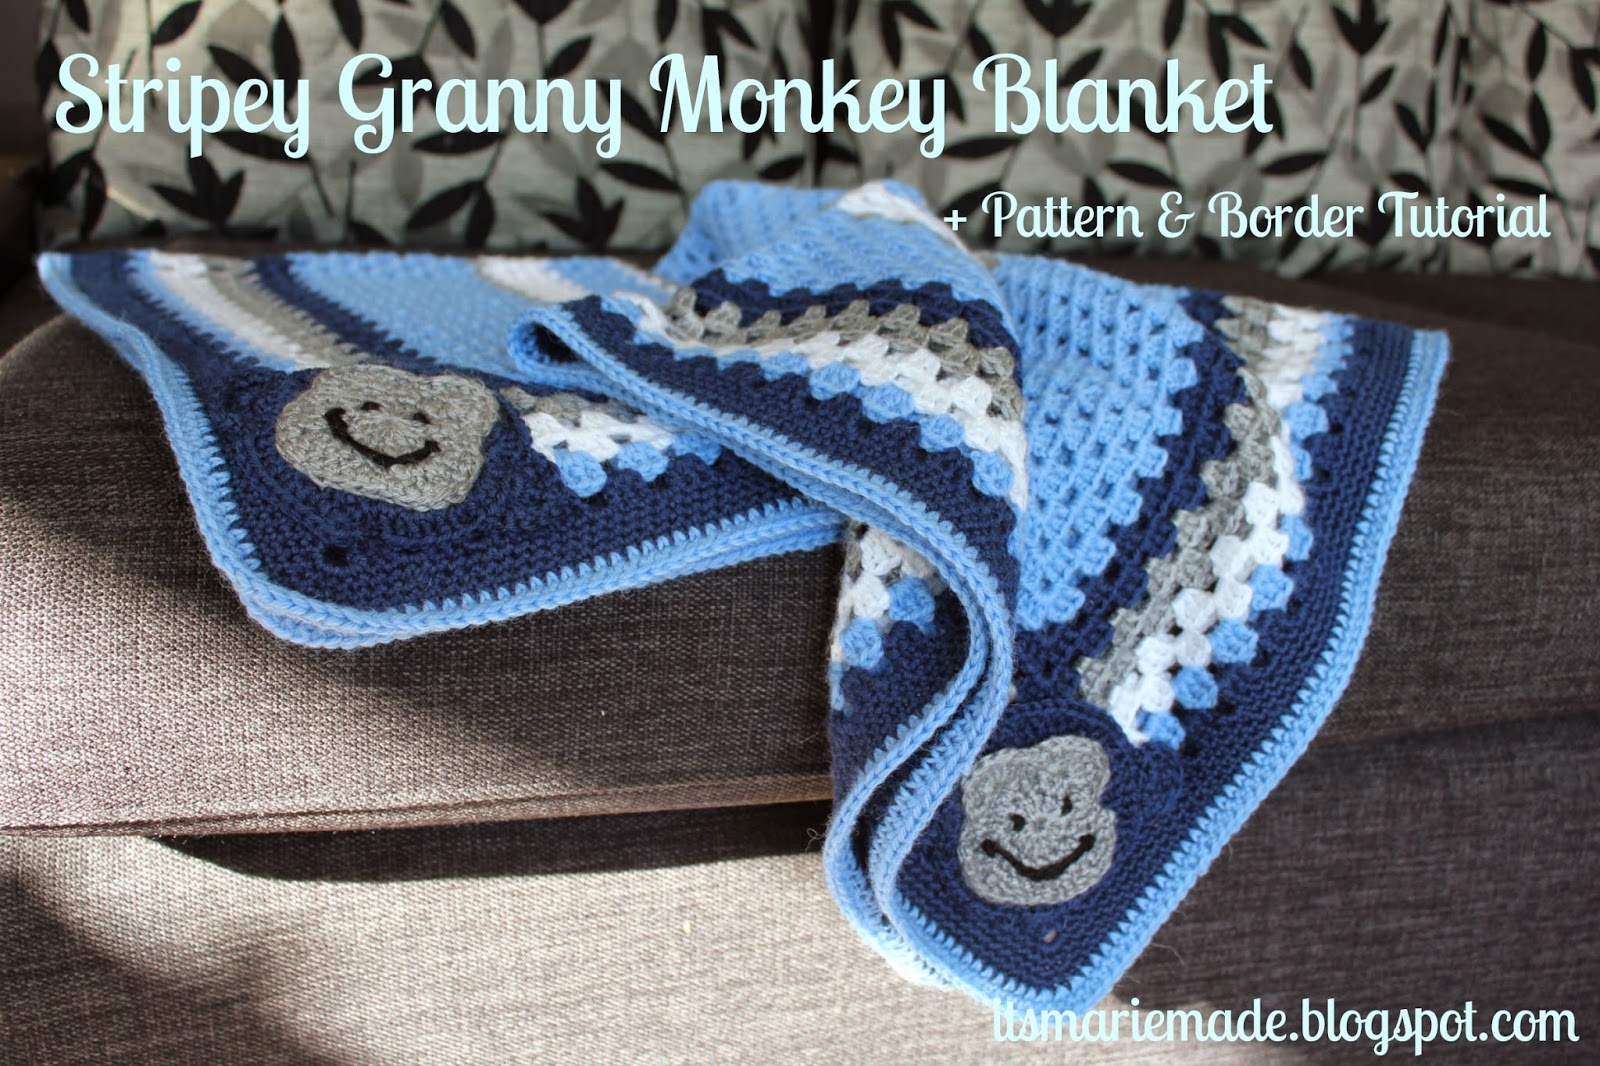 Monkey Blanket Crochet Pattern Its Marie Made Stripey Crochet Granny Monkey Blanket Pattern